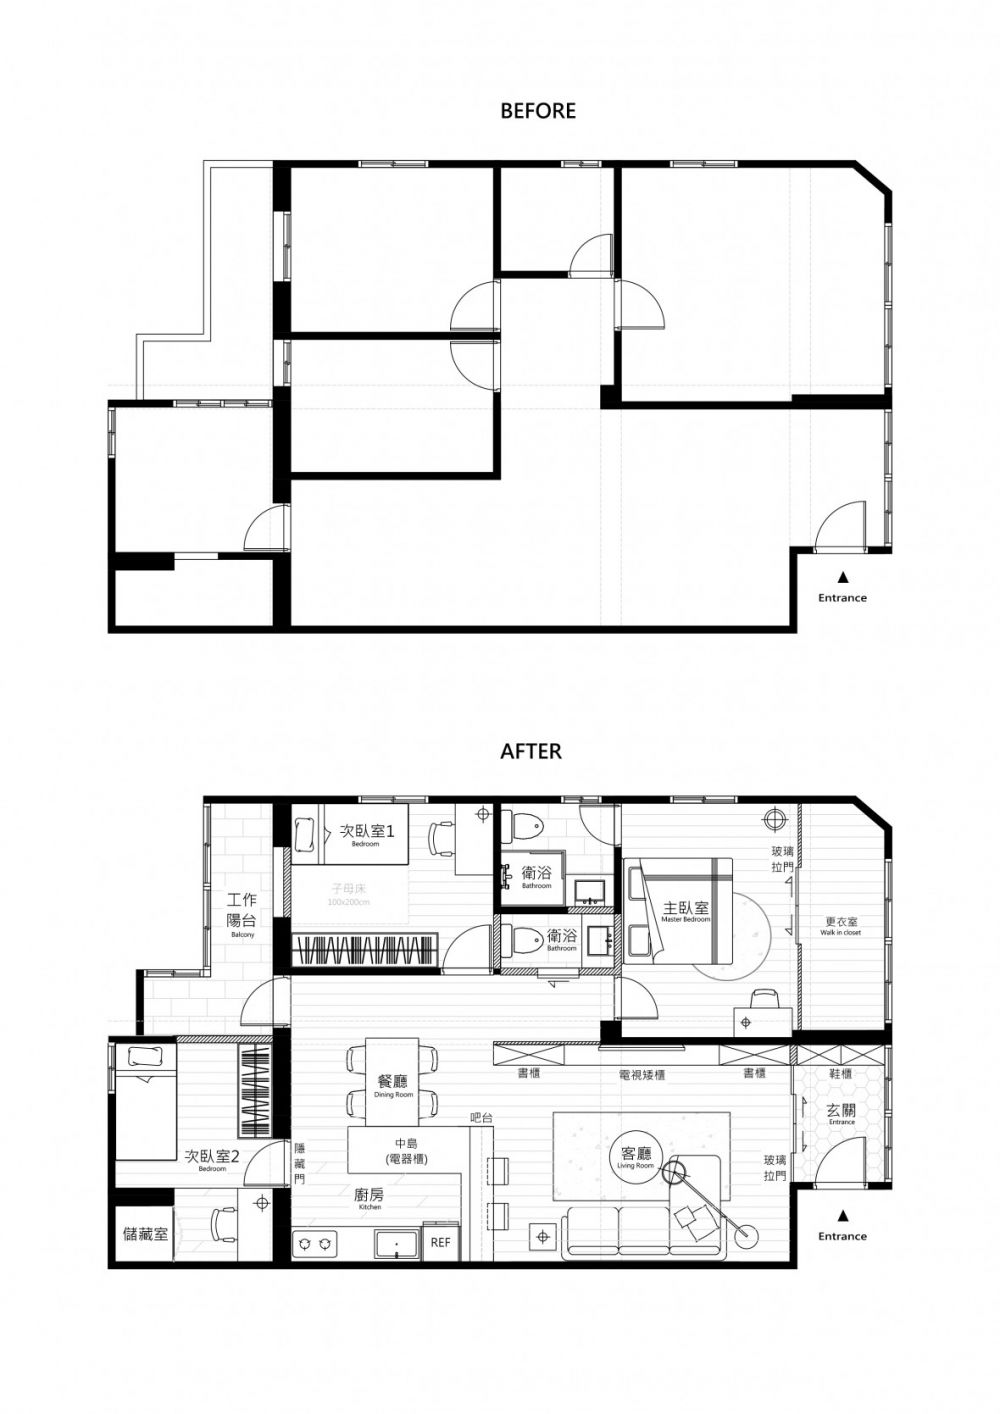 Floor Plan - Before&After.jpg